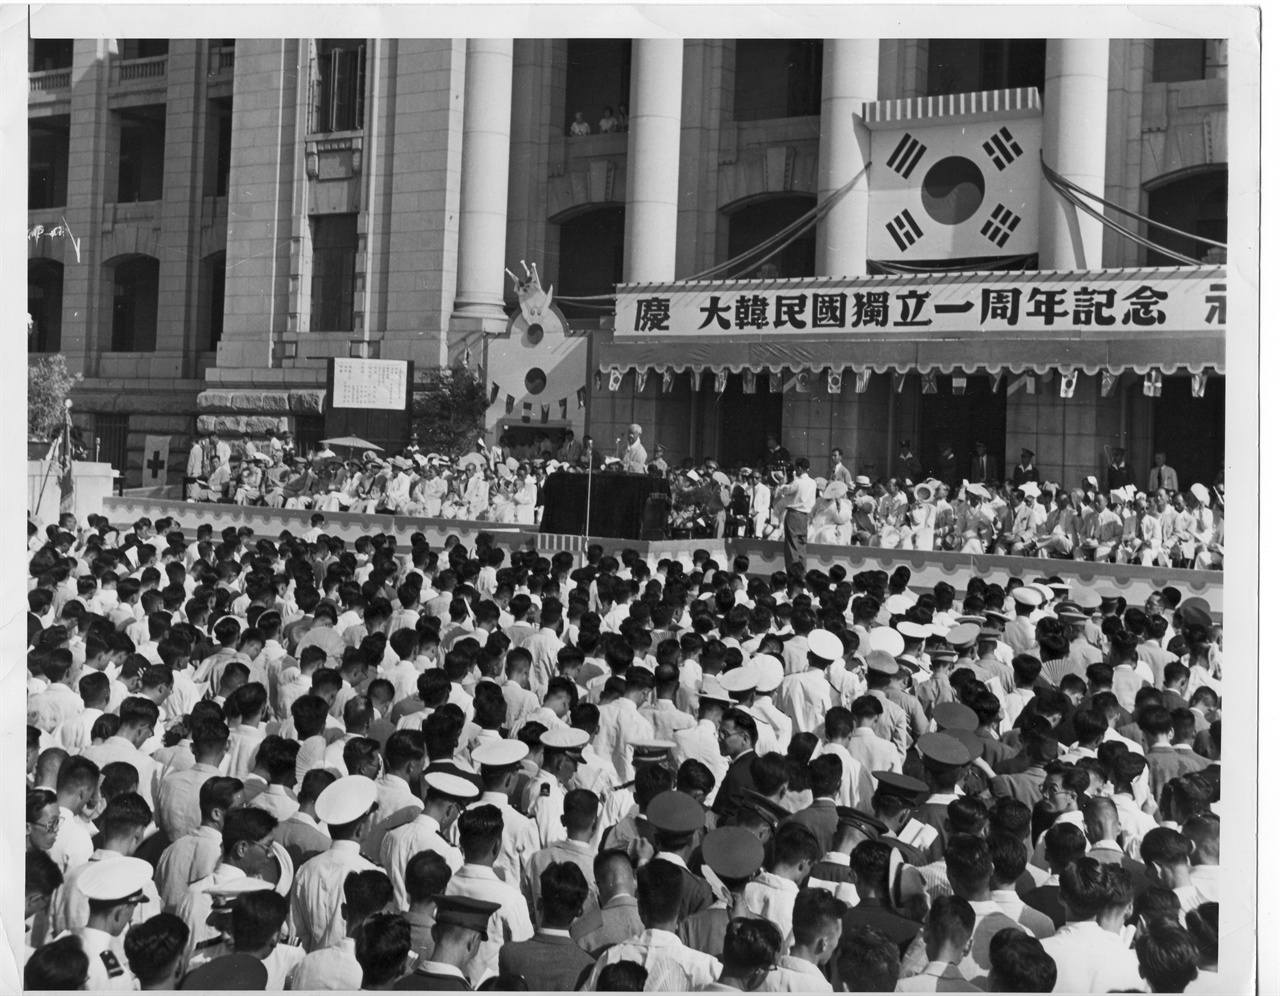 이승만 대통령이 중앙청 광장에서 열린 대한민국 독립1주년 기념식장에서 경축사를 하고 있다(1949. 8. 15.).